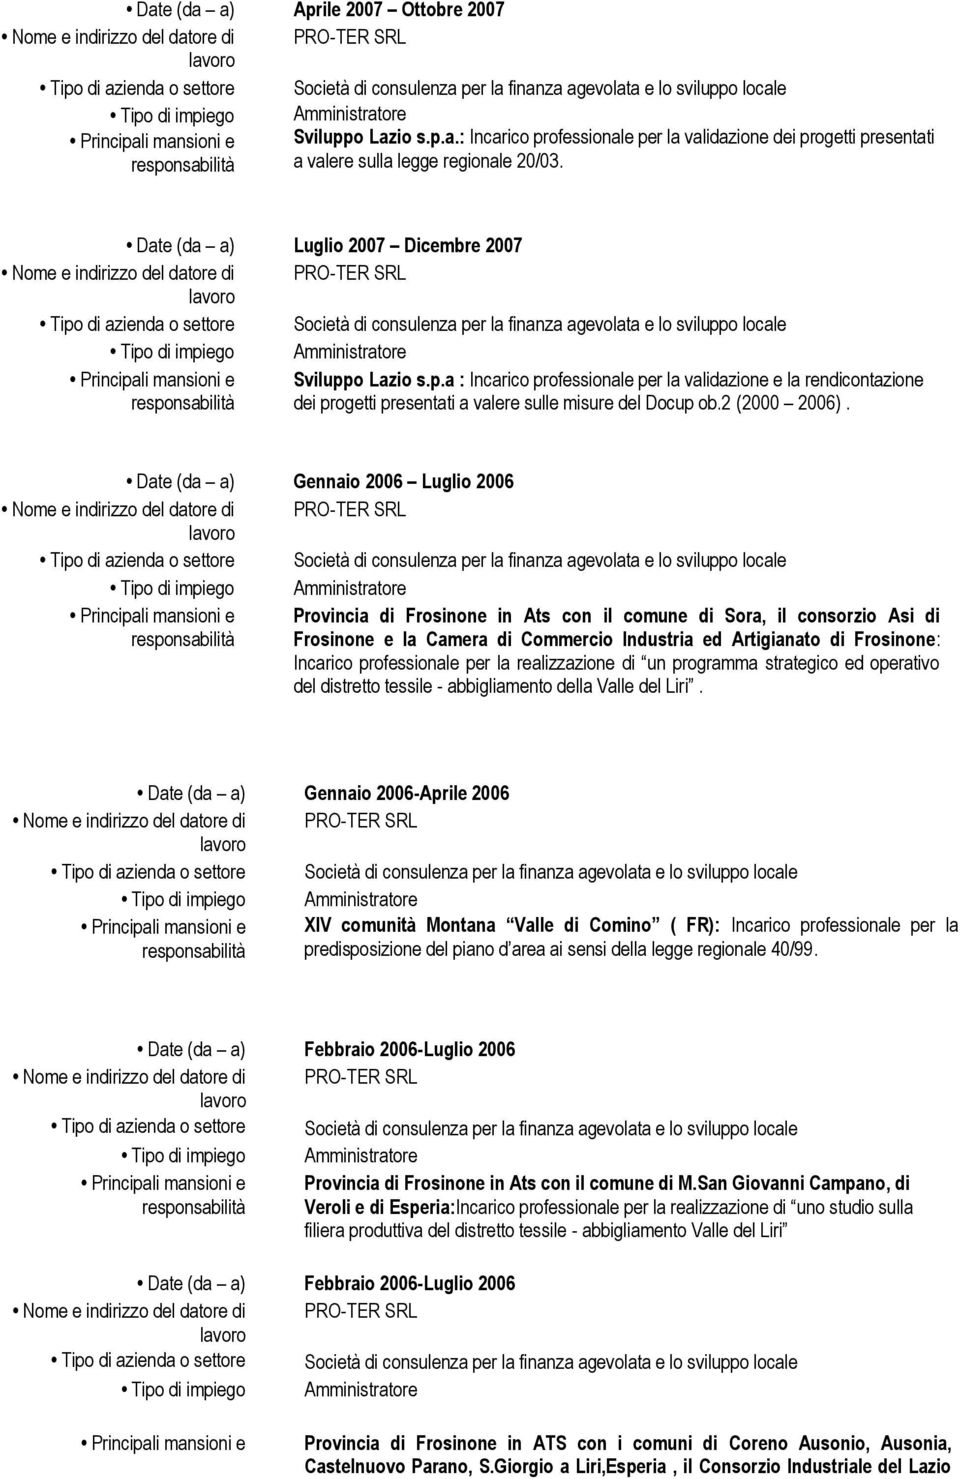 Date (da a) Gennaio 2006 Luglio 2006 Provincia di Frosinone in Ats con il comune di Sora, il consorzio Asi di Frosinone e la Camera di Commercio Industria ed Artigianato di Frosinone: Incarico